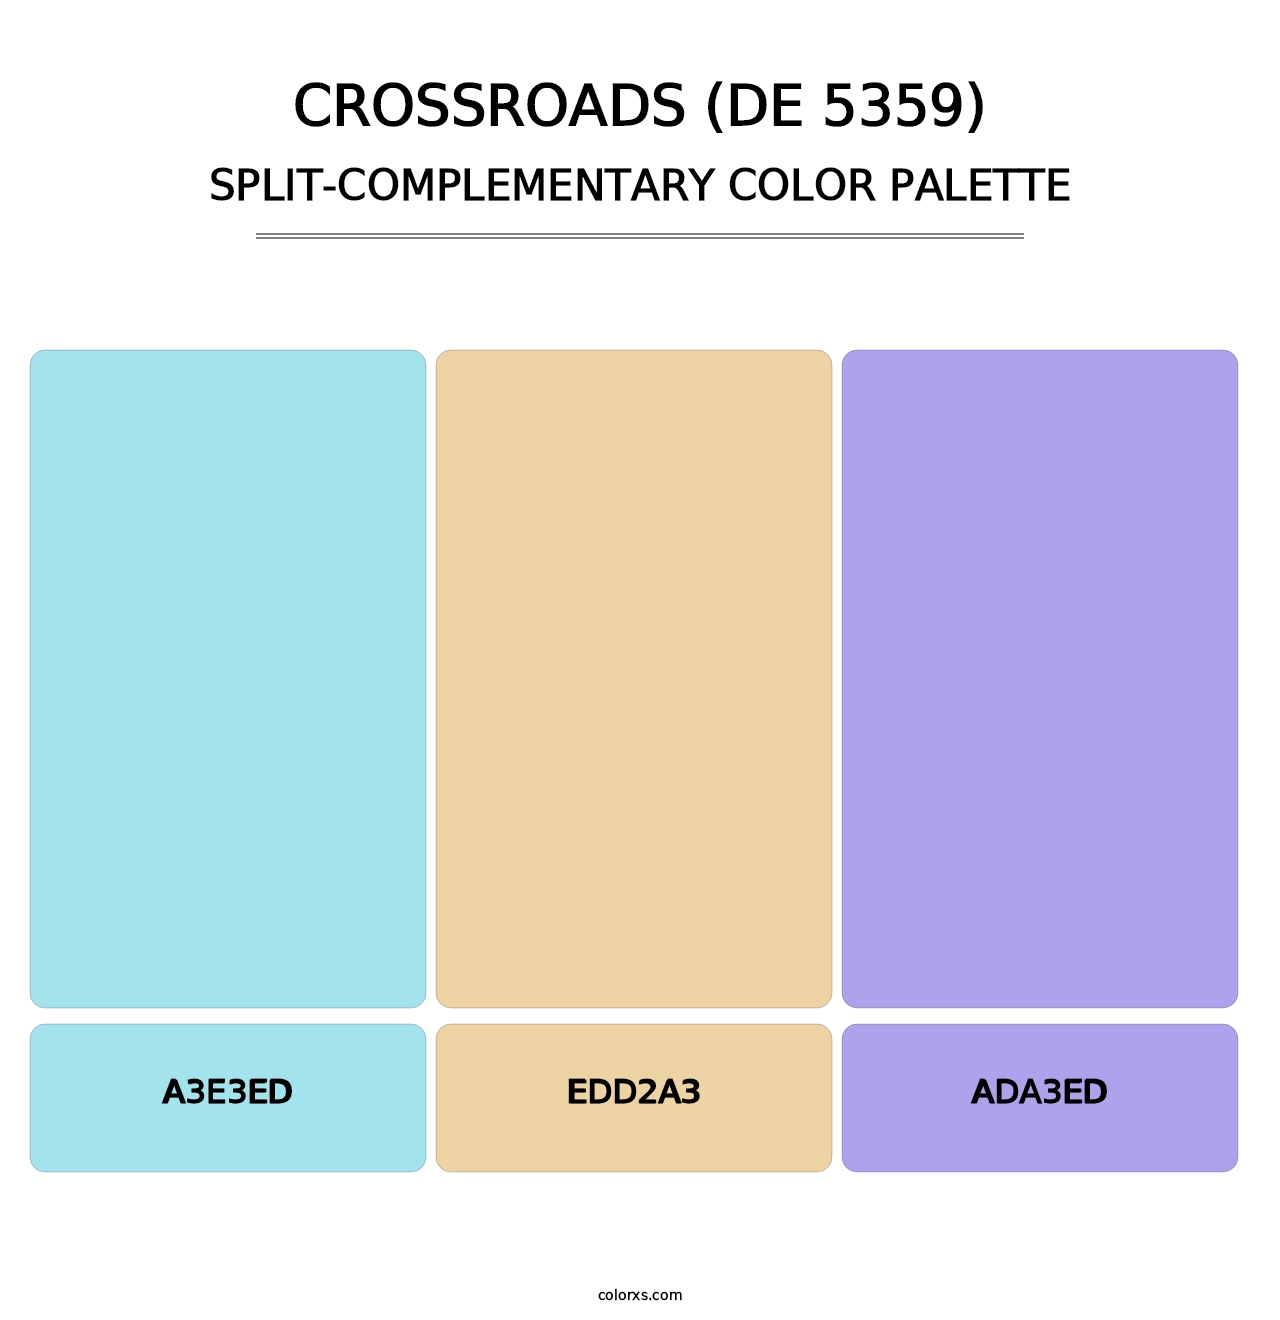 Crossroads (DE 5359) - Split-Complementary Color Palette